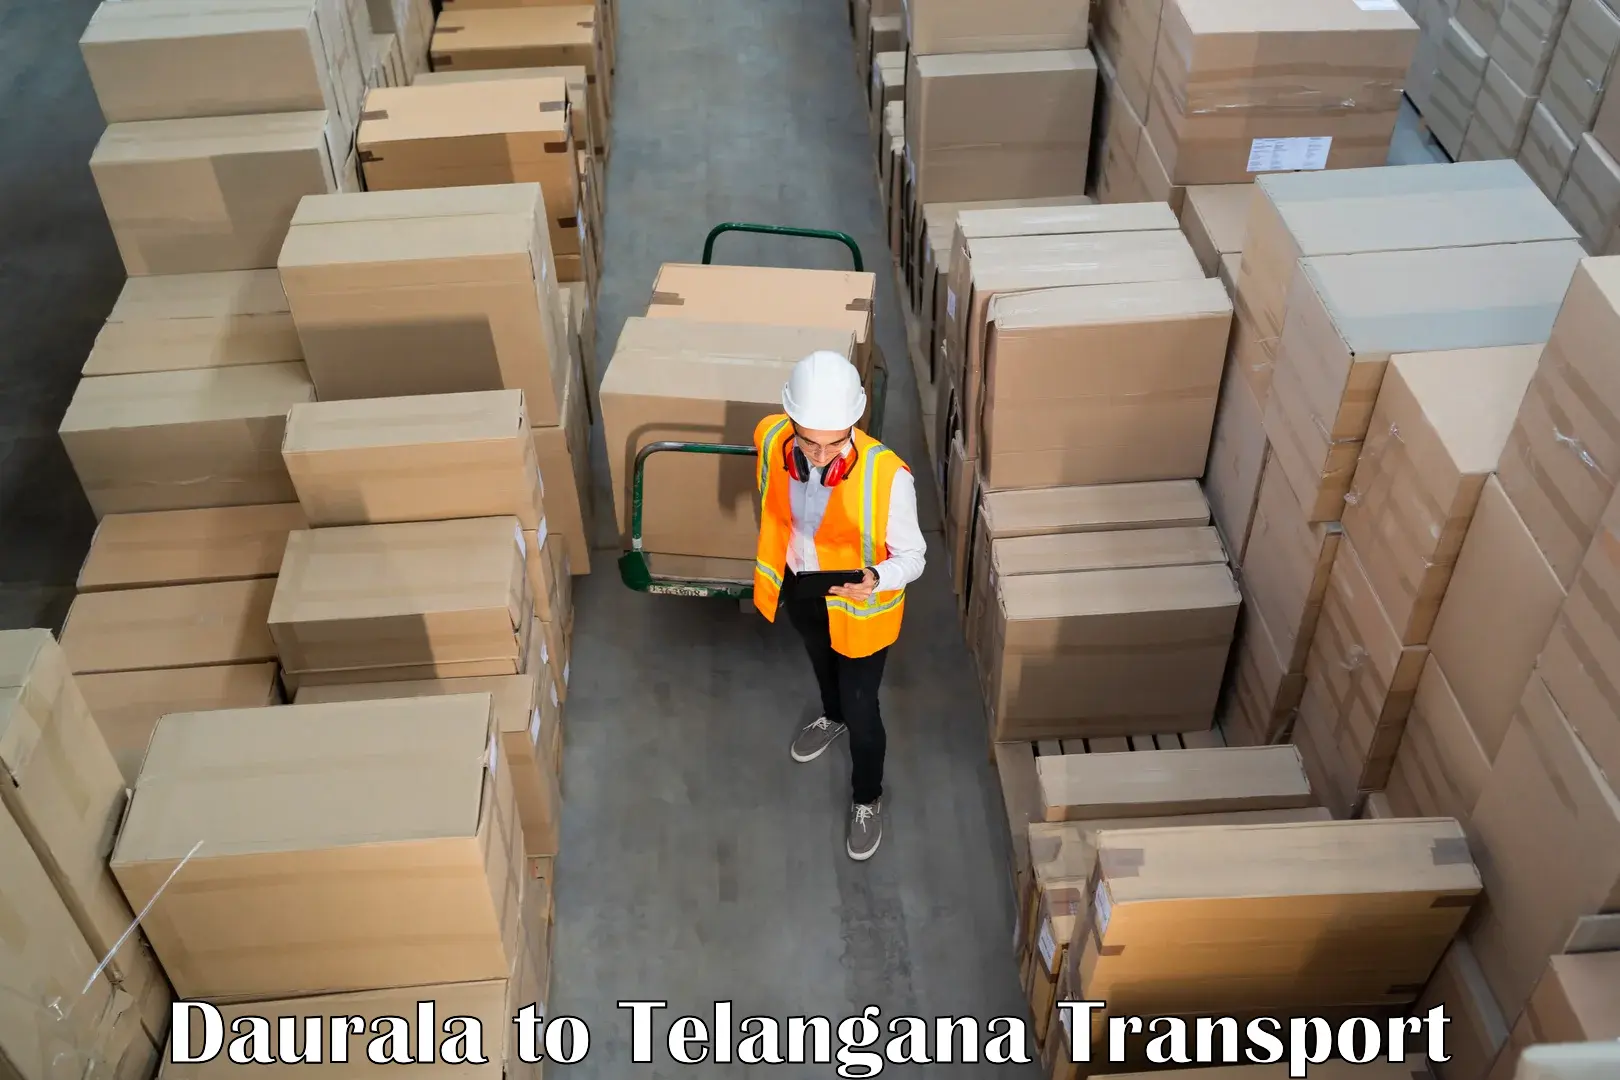 Commercial transport service Daurala to Utnoor